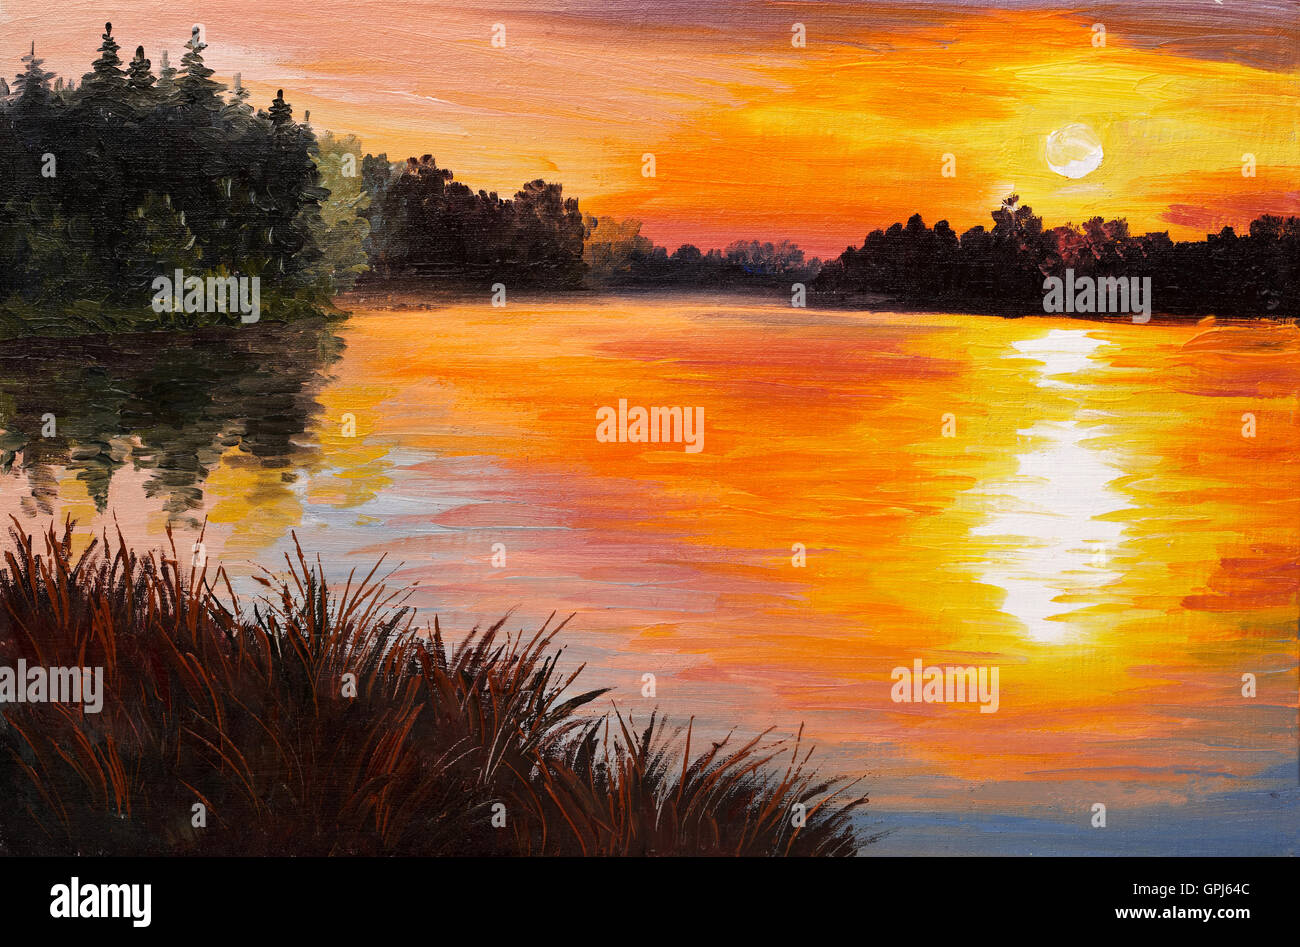 Peinture à l'huile - lac dans une forêt, le coucher du soleil. La peinture abstraite, les travaux d'art a été réalisée dans le style de l'impressionnisme, le papier peint Banque D'Images